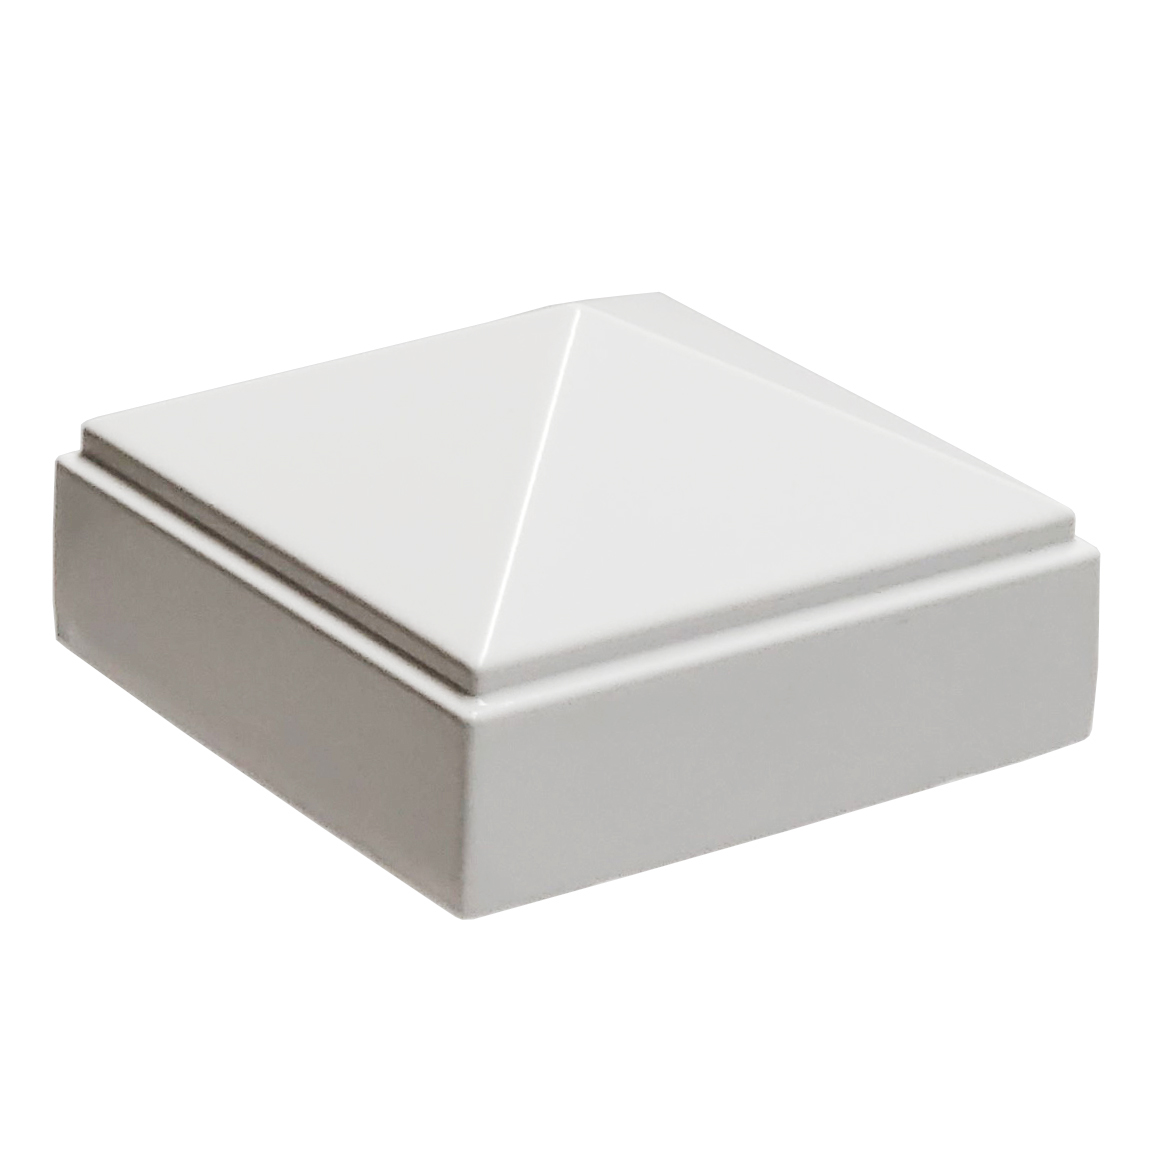 2.5" x 2.5" Decorex Hardware Aluminium Pyramid Post Cap for Metal Posts White 